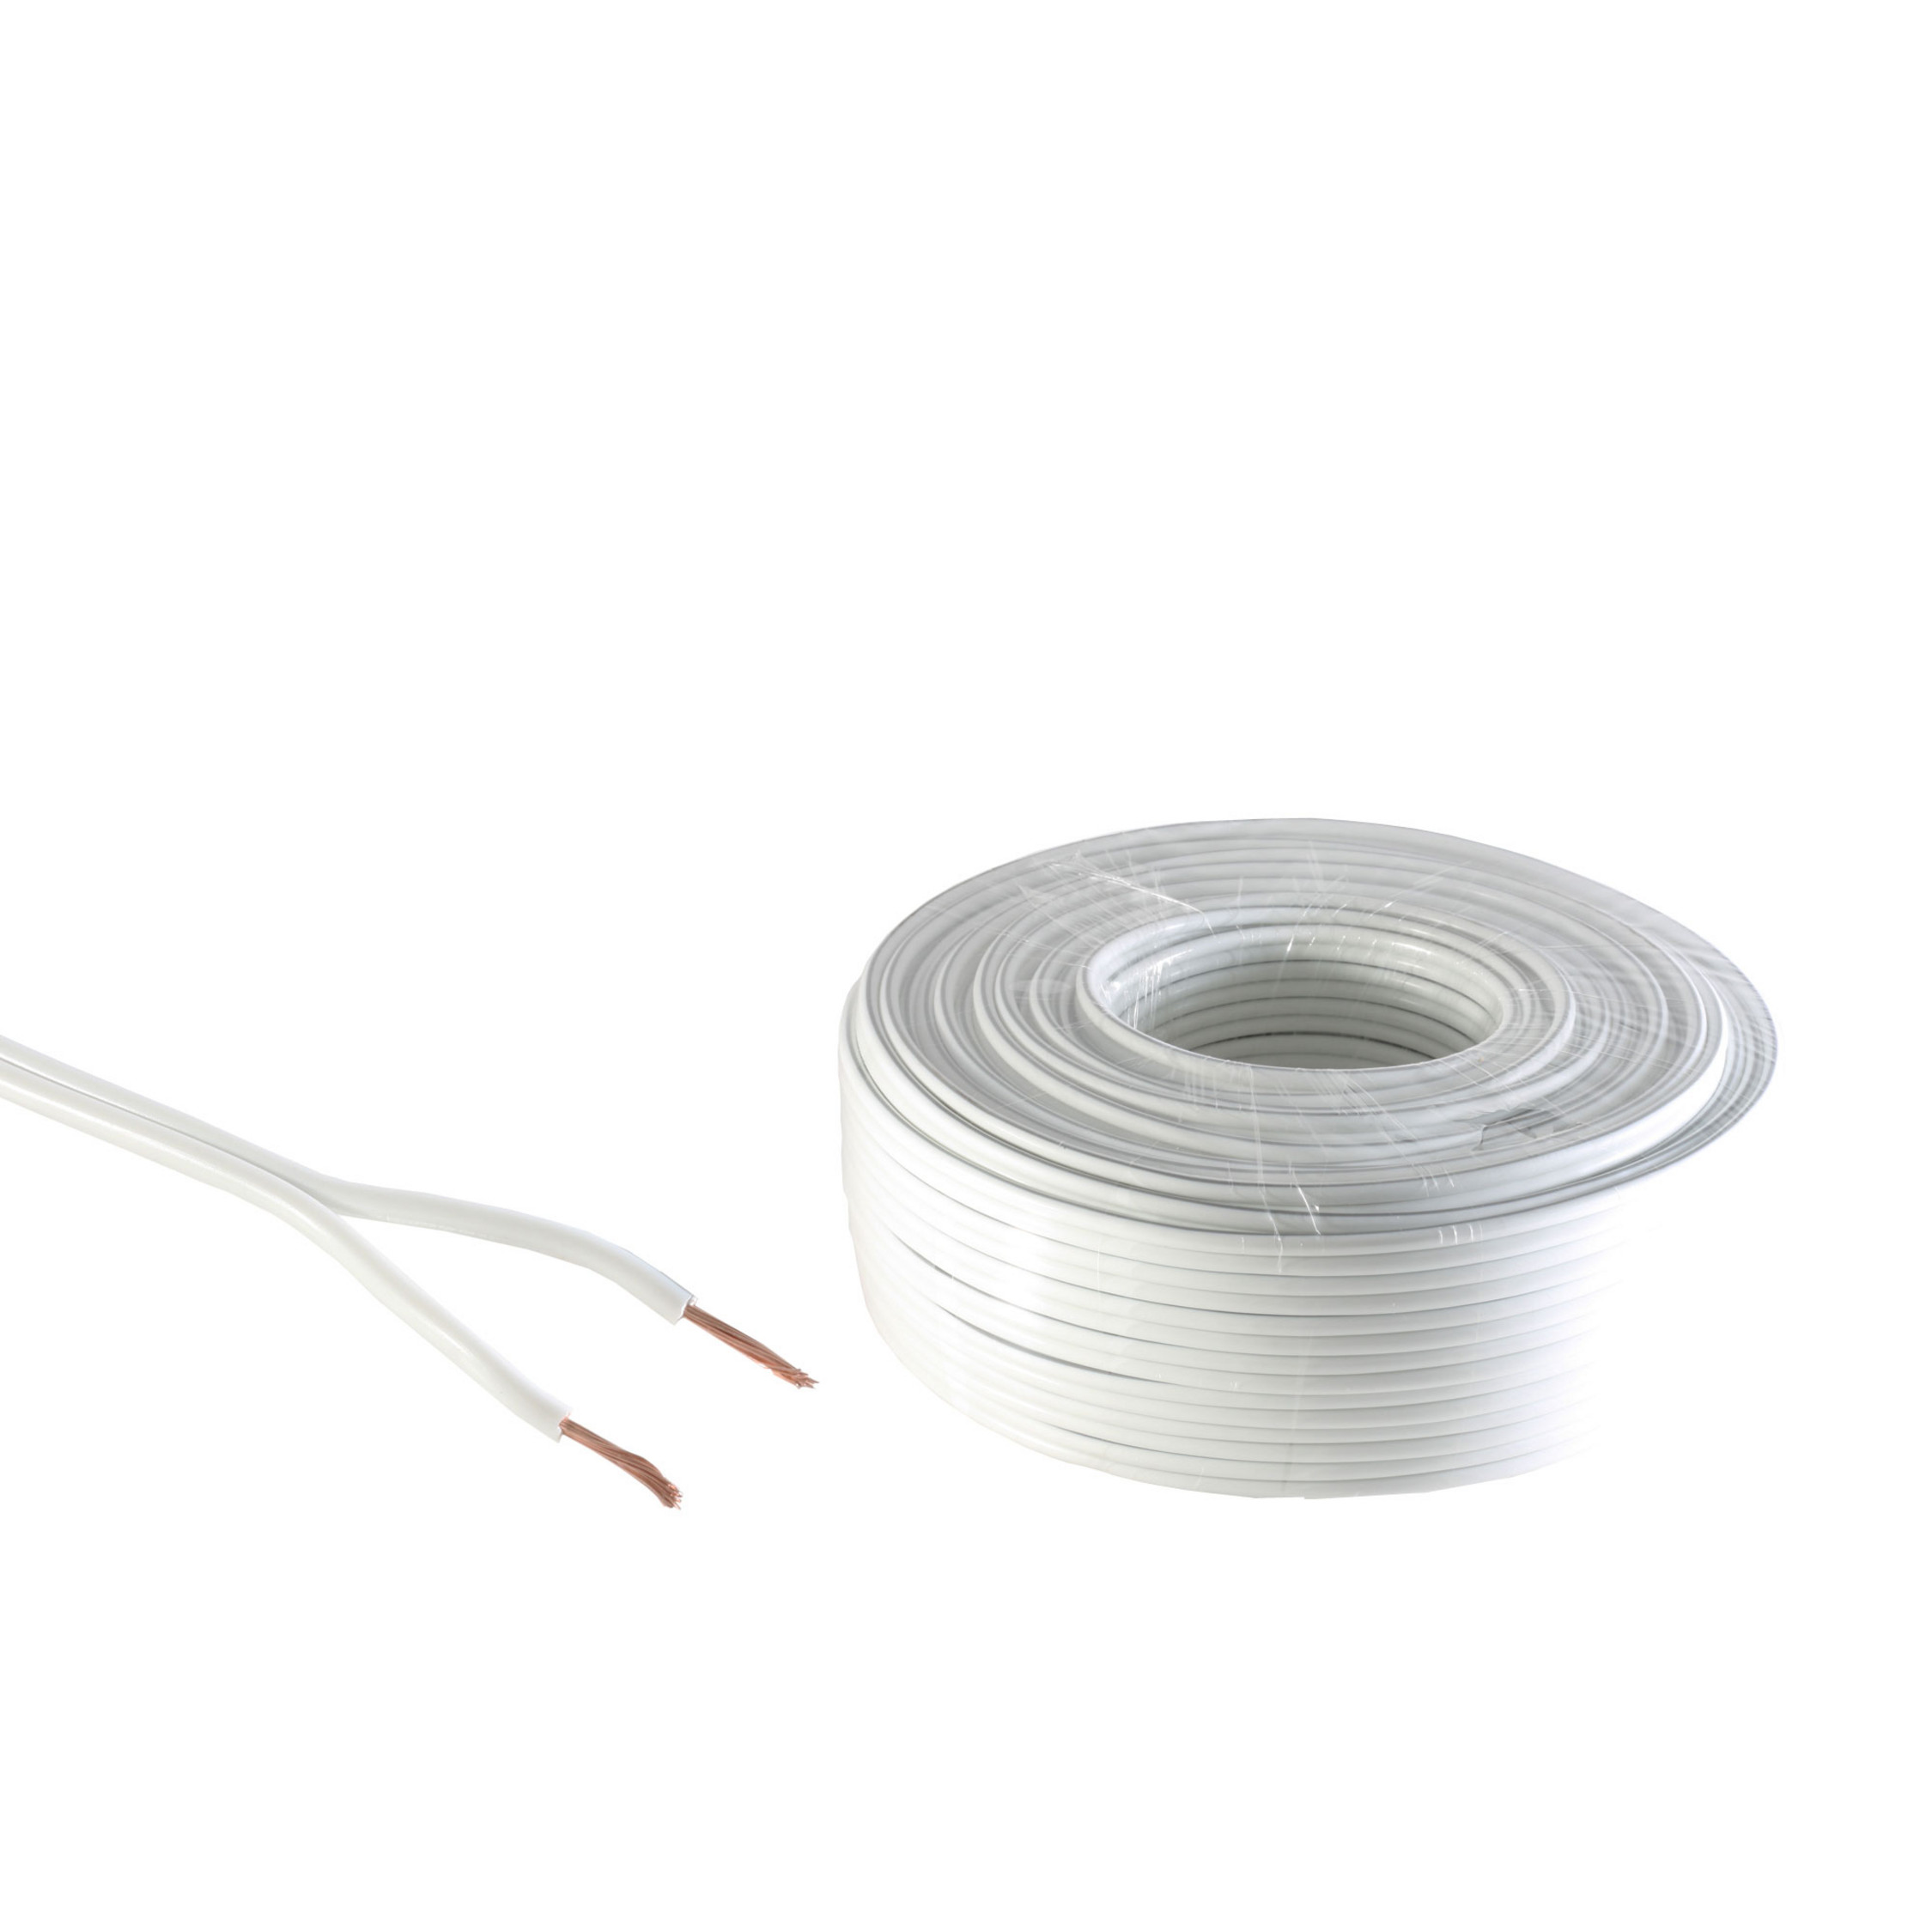 KABELBUDE Lautsprecher-Kabel 1,5mm² weiß 10m Kabel Audio/Video 48x0,20 CCA